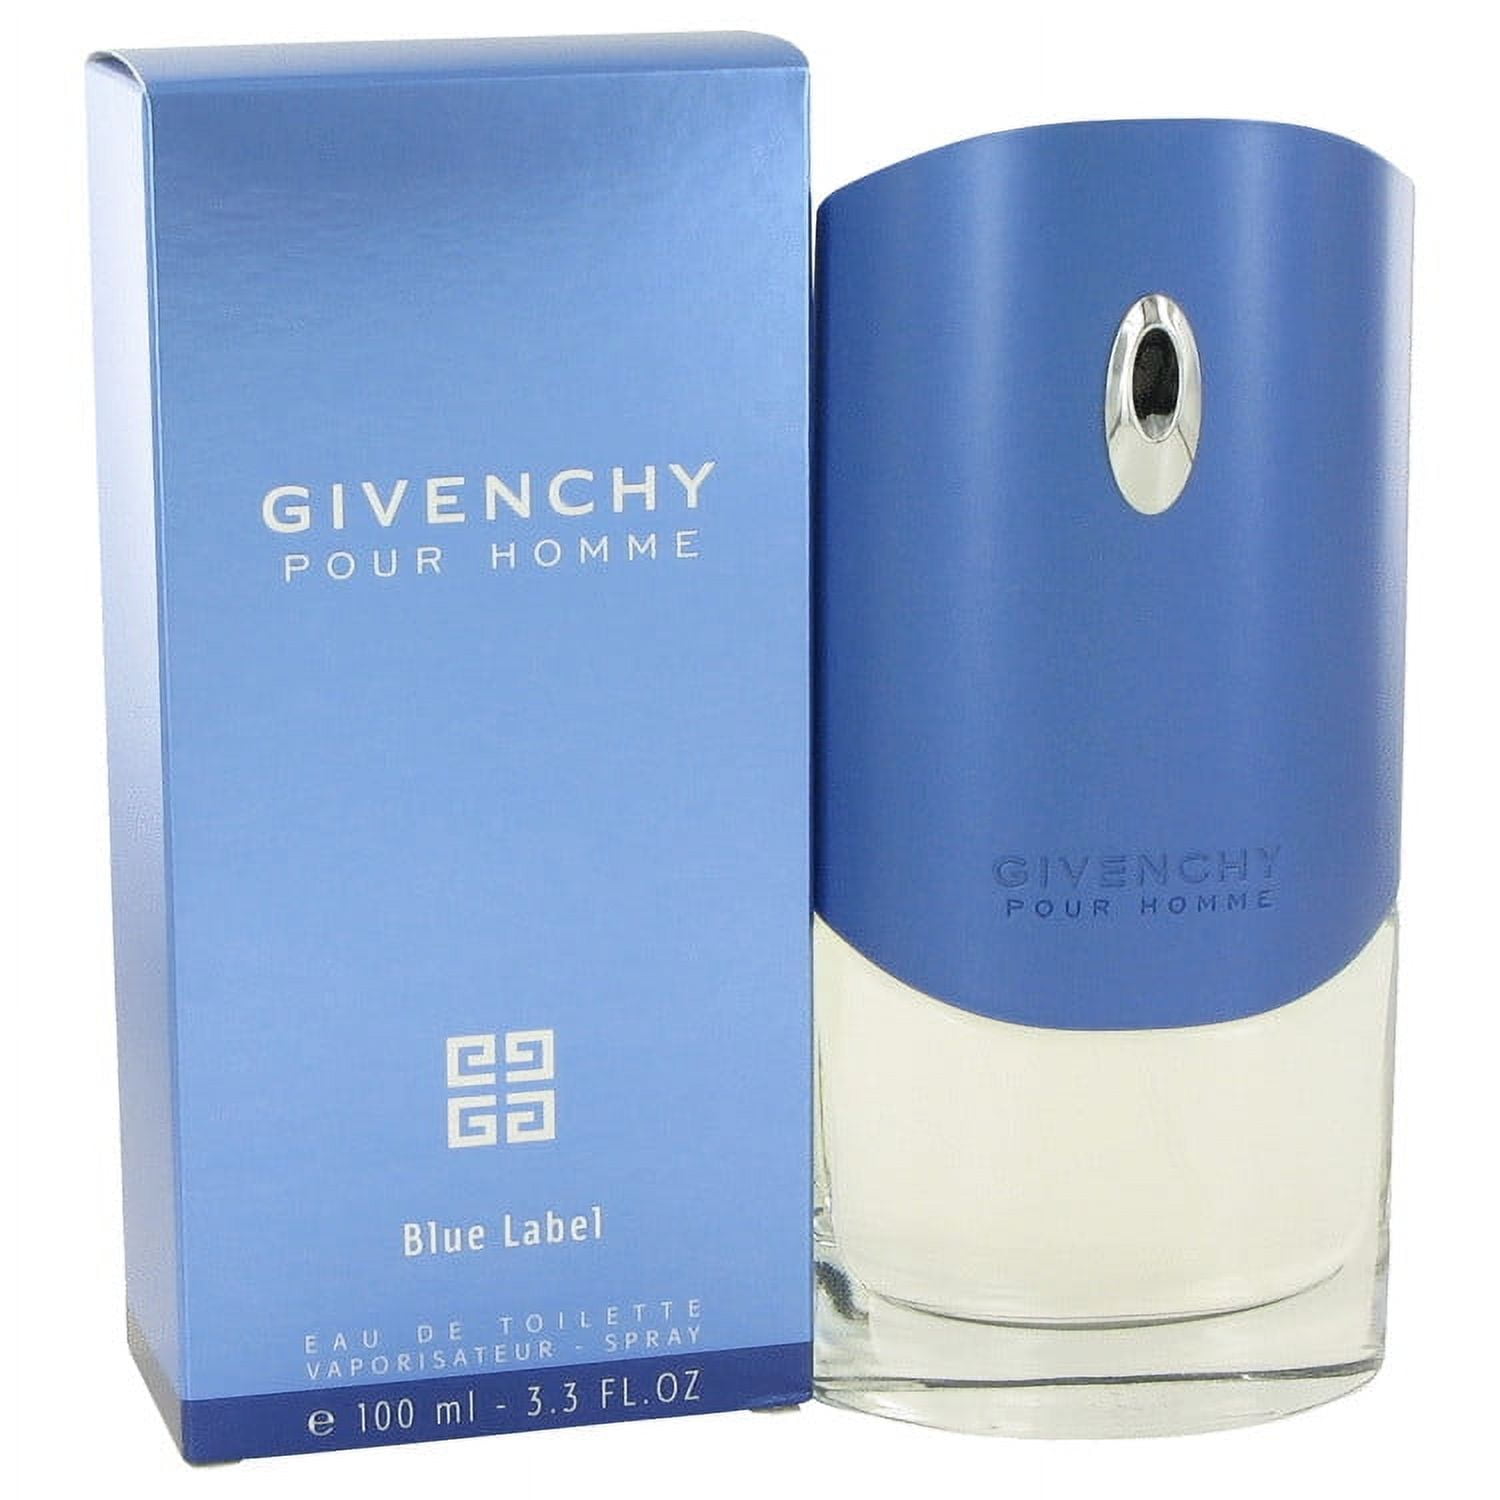 Givenchy Blue Label by Givenchy 3.3 oz Eau de Toilette Spray / Men